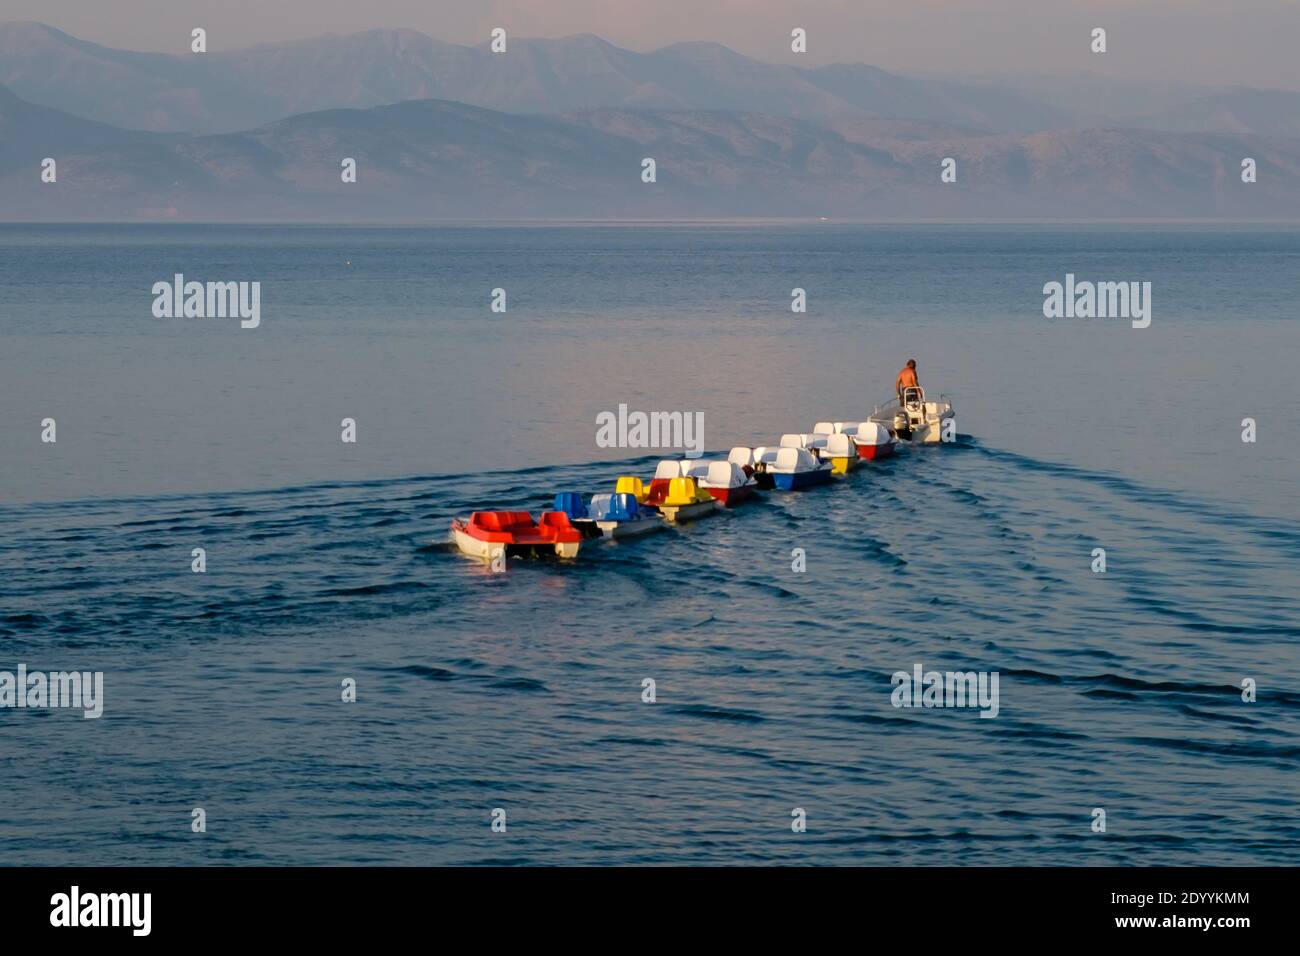 Un hombre en un barco está tirando una línea de catamaranes coloridos Foto de stock